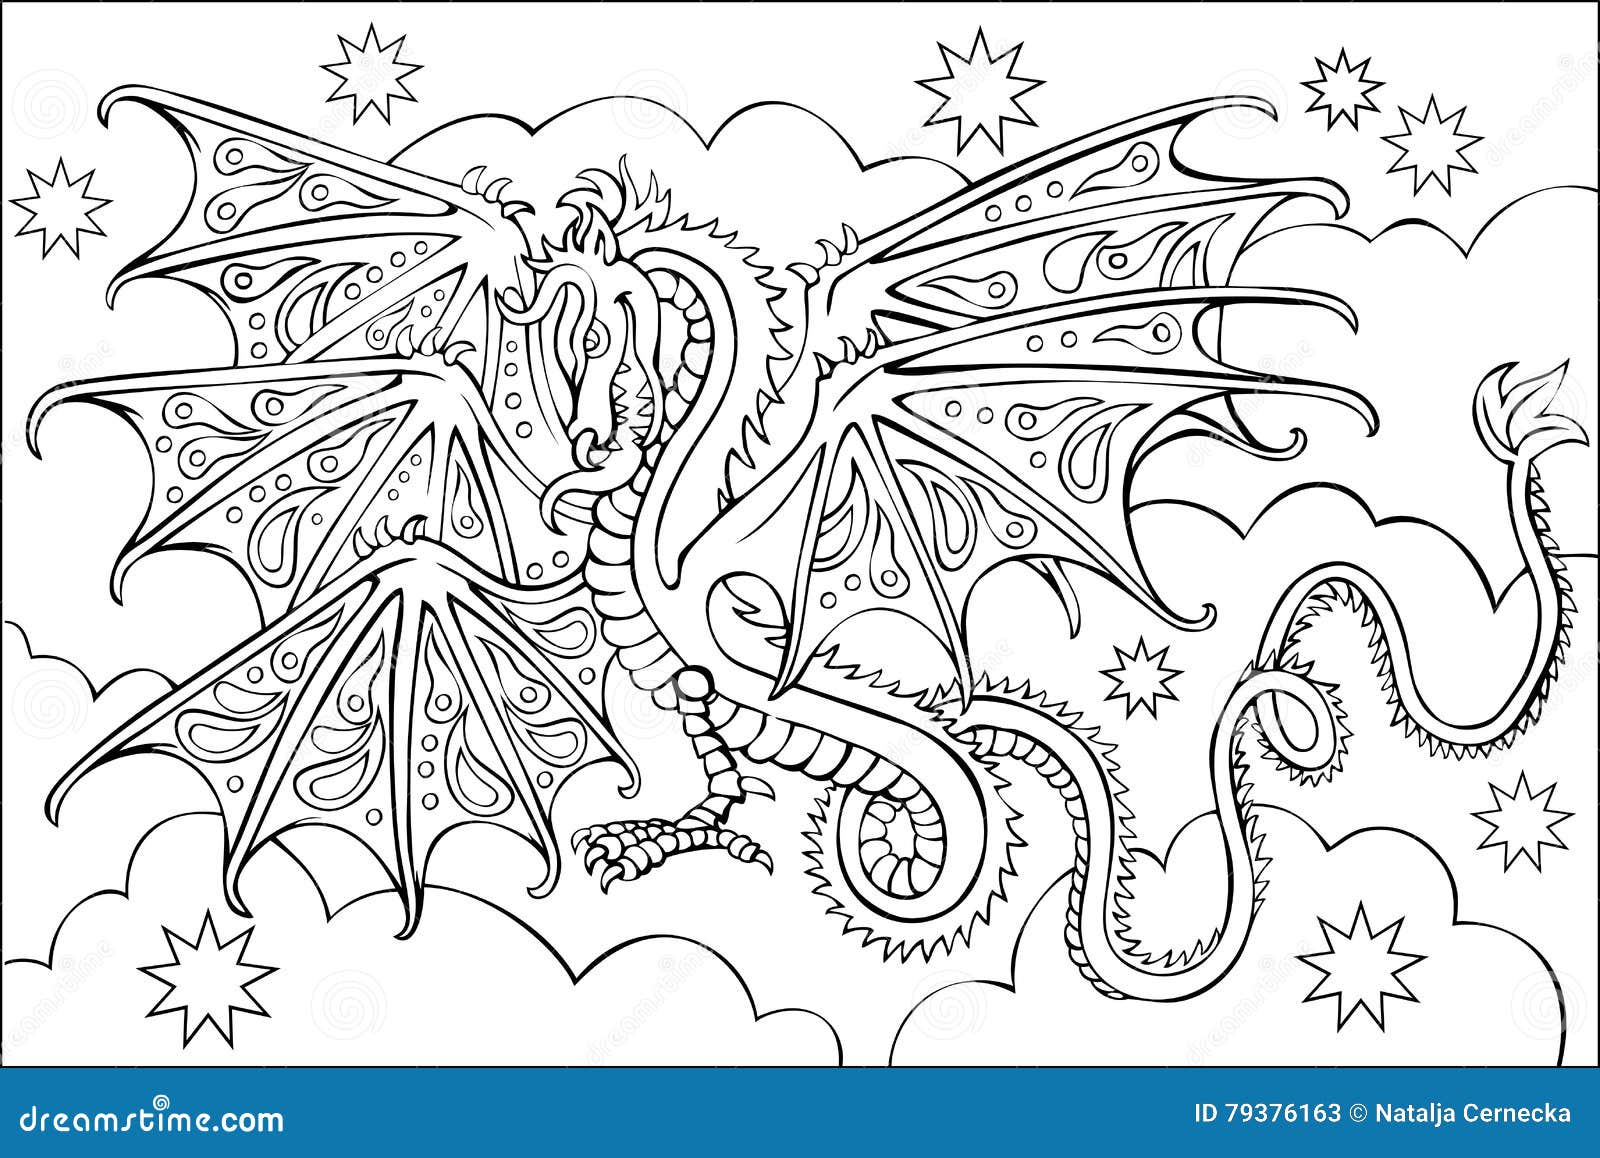 Pagina con il disegno in bianco e nero del drago per colorare Libera da Diritti